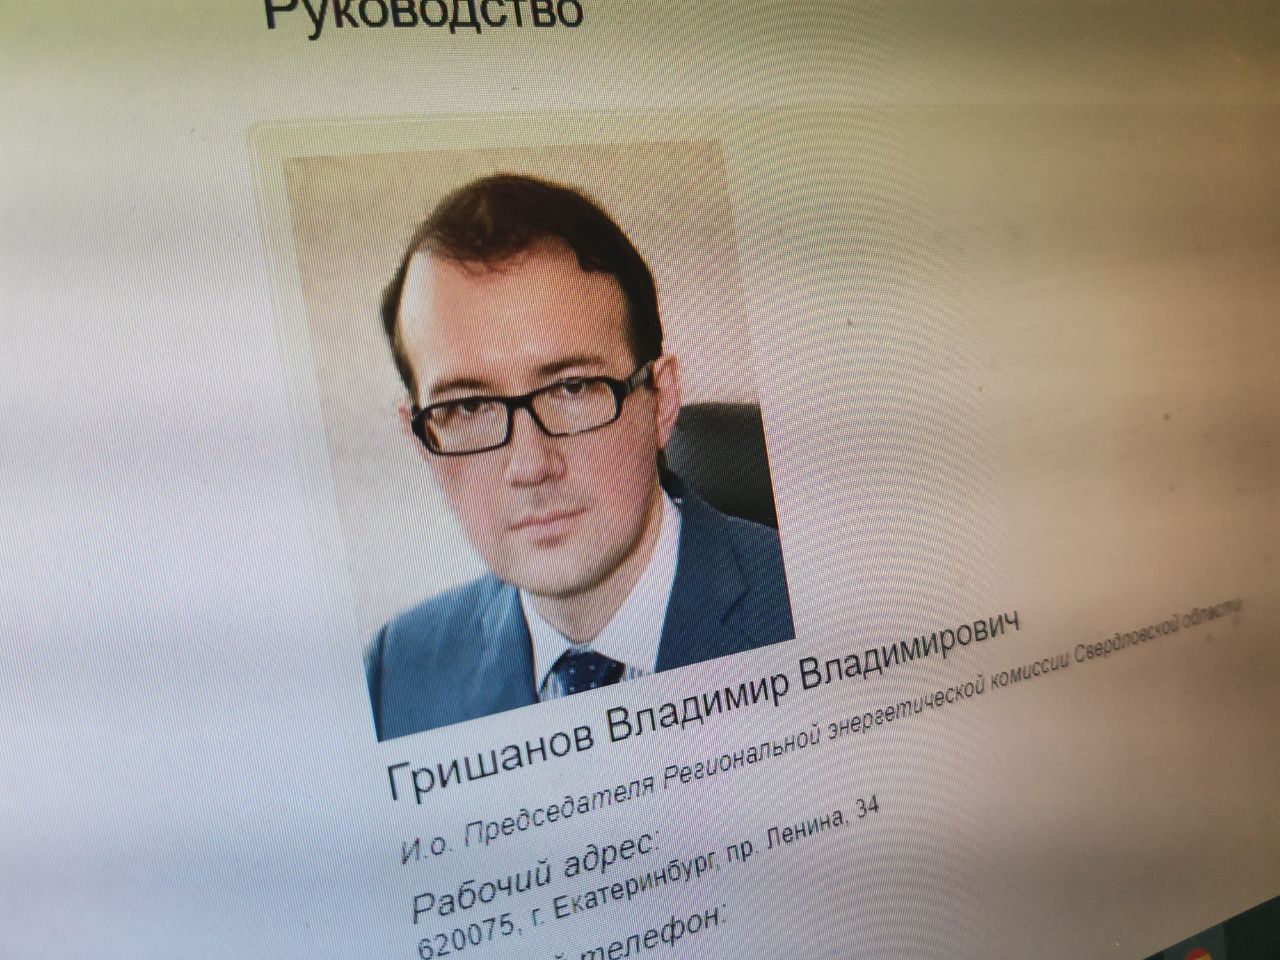 И.о. руководителя РЭК Свердловской области проведет личный прием граждан в Серове